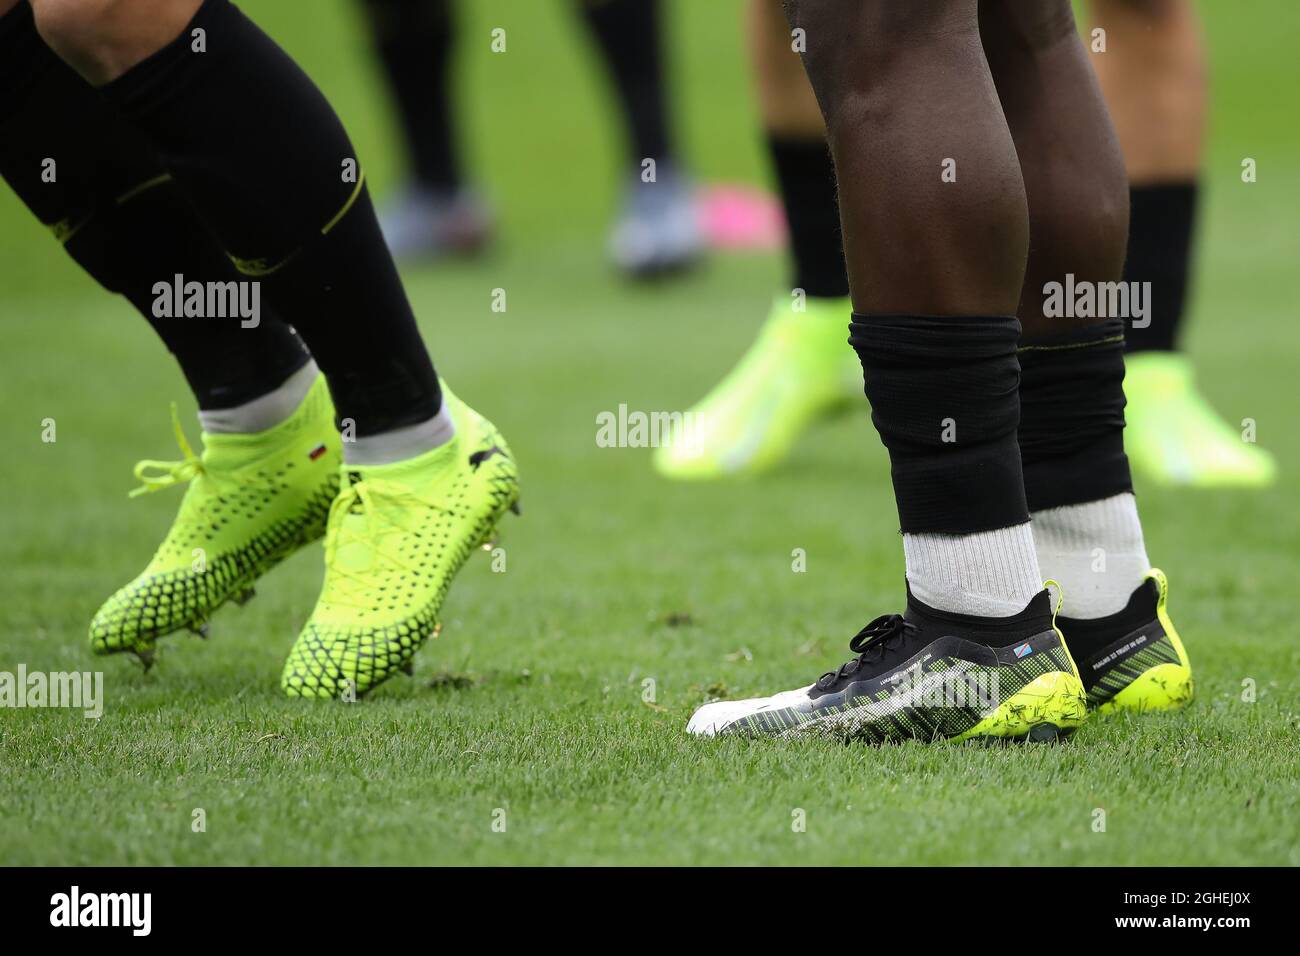 Romelu Lukaku des chaussures de football d'Inter portant le nom de son  frère cadet et de son footballeur, la Jordanie, avec le drapeau de la  République du Congo sur la chaussure gauche